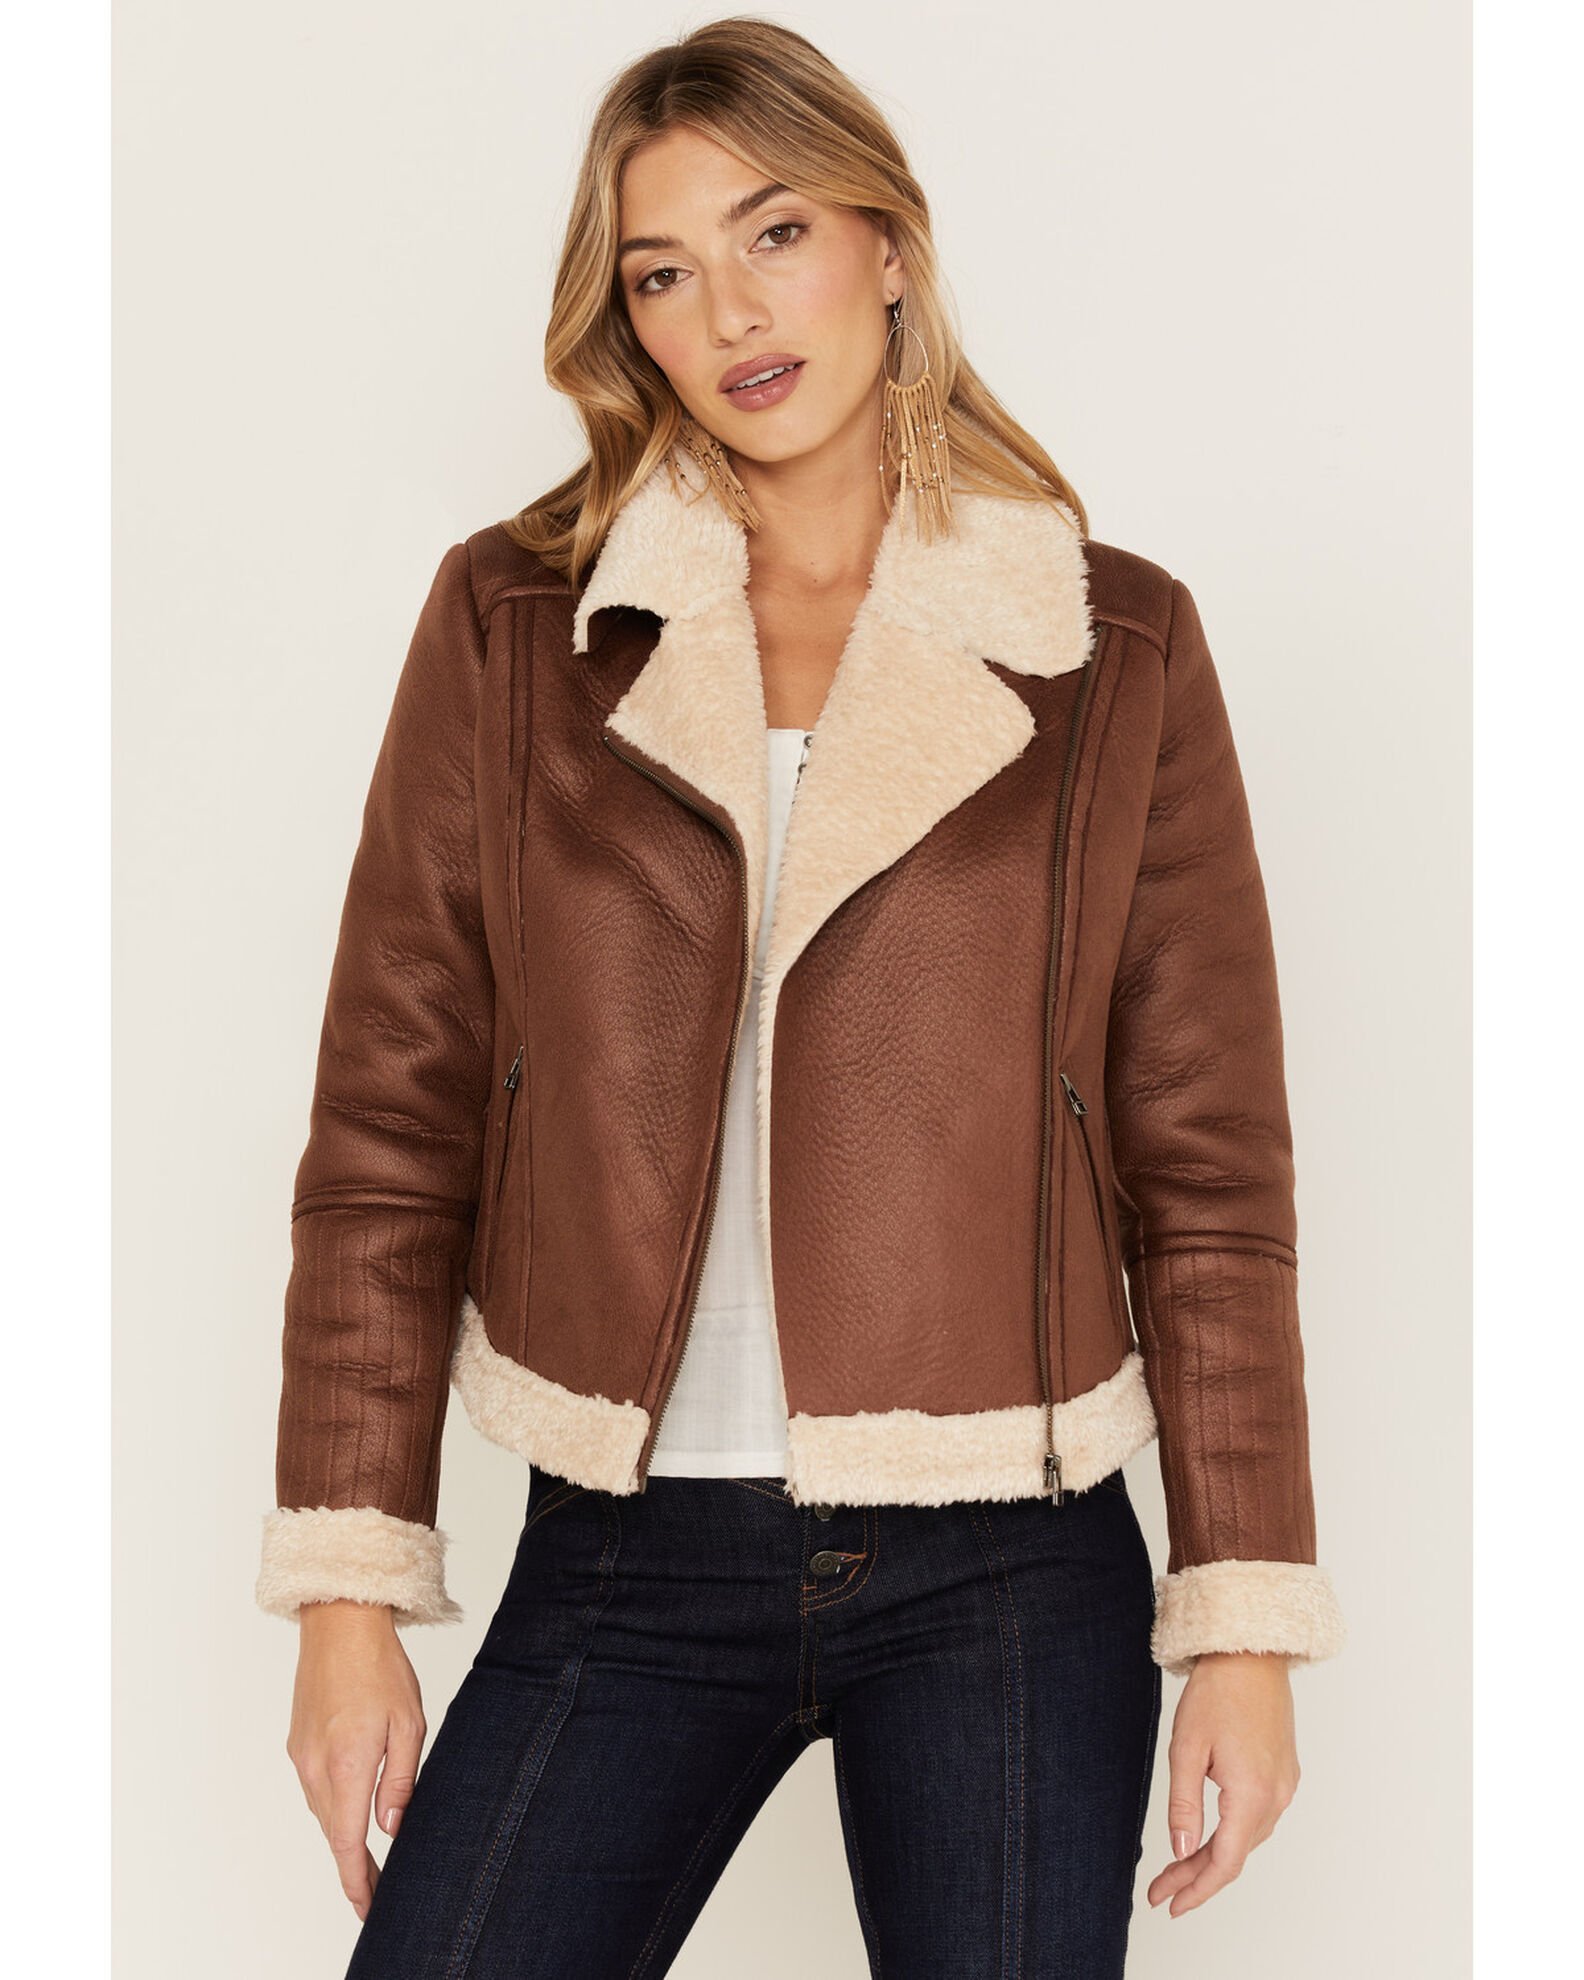 Women's Faux Leather & Shearling Jacket